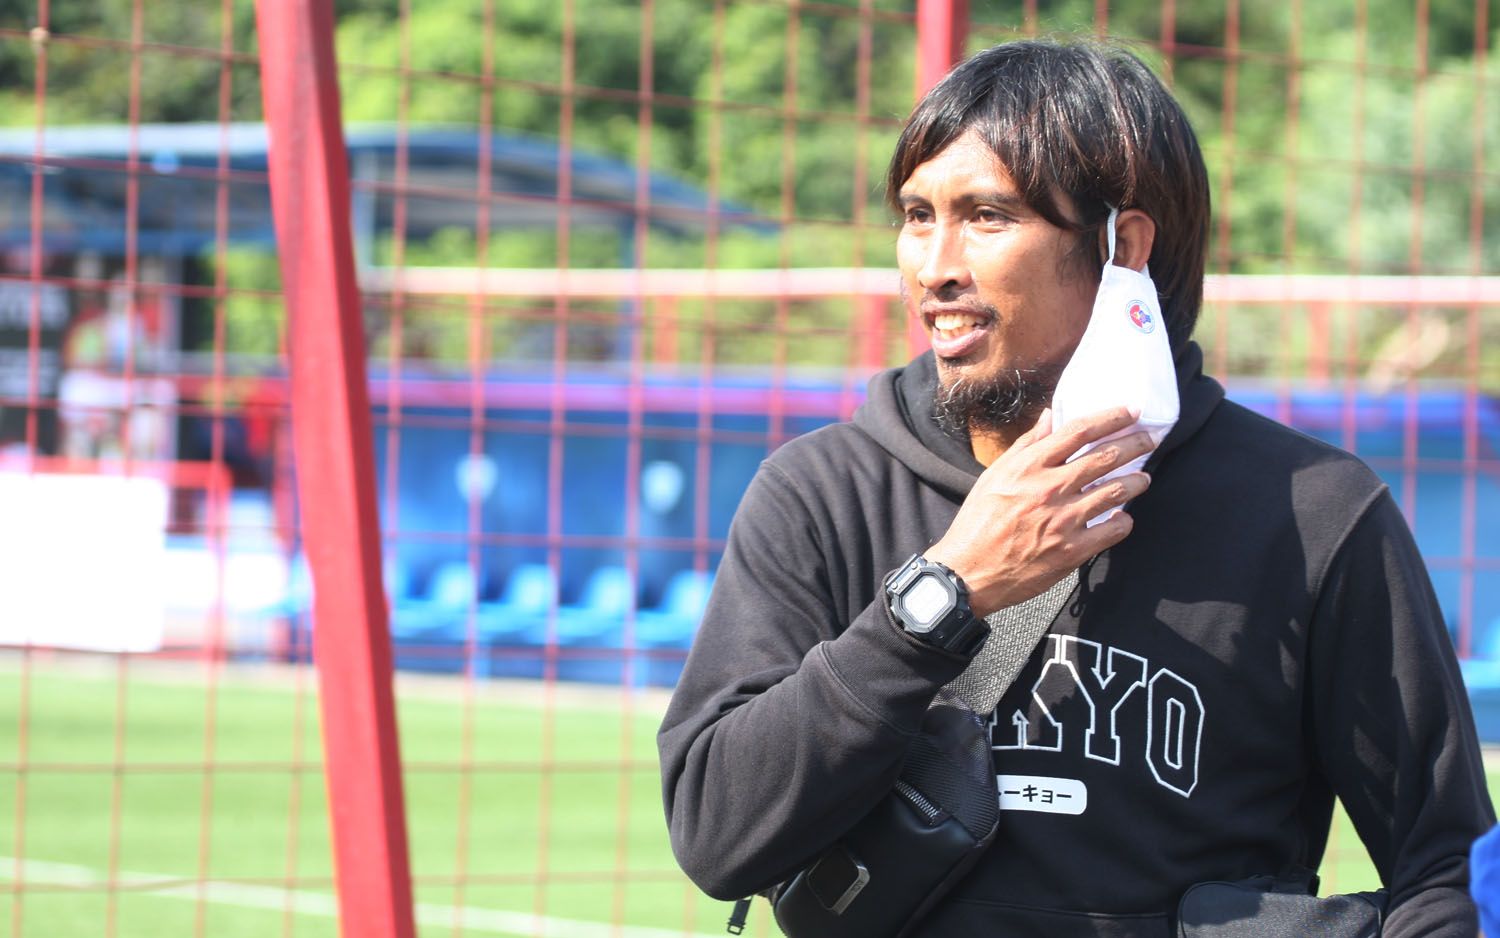 Budi Sudarsono, mantan pemain timnas Indonesia, saat menghadari pertandingan amal pada masa pandemi, di Pancoran Soccer Field, Jakarta pada Juli 2020.